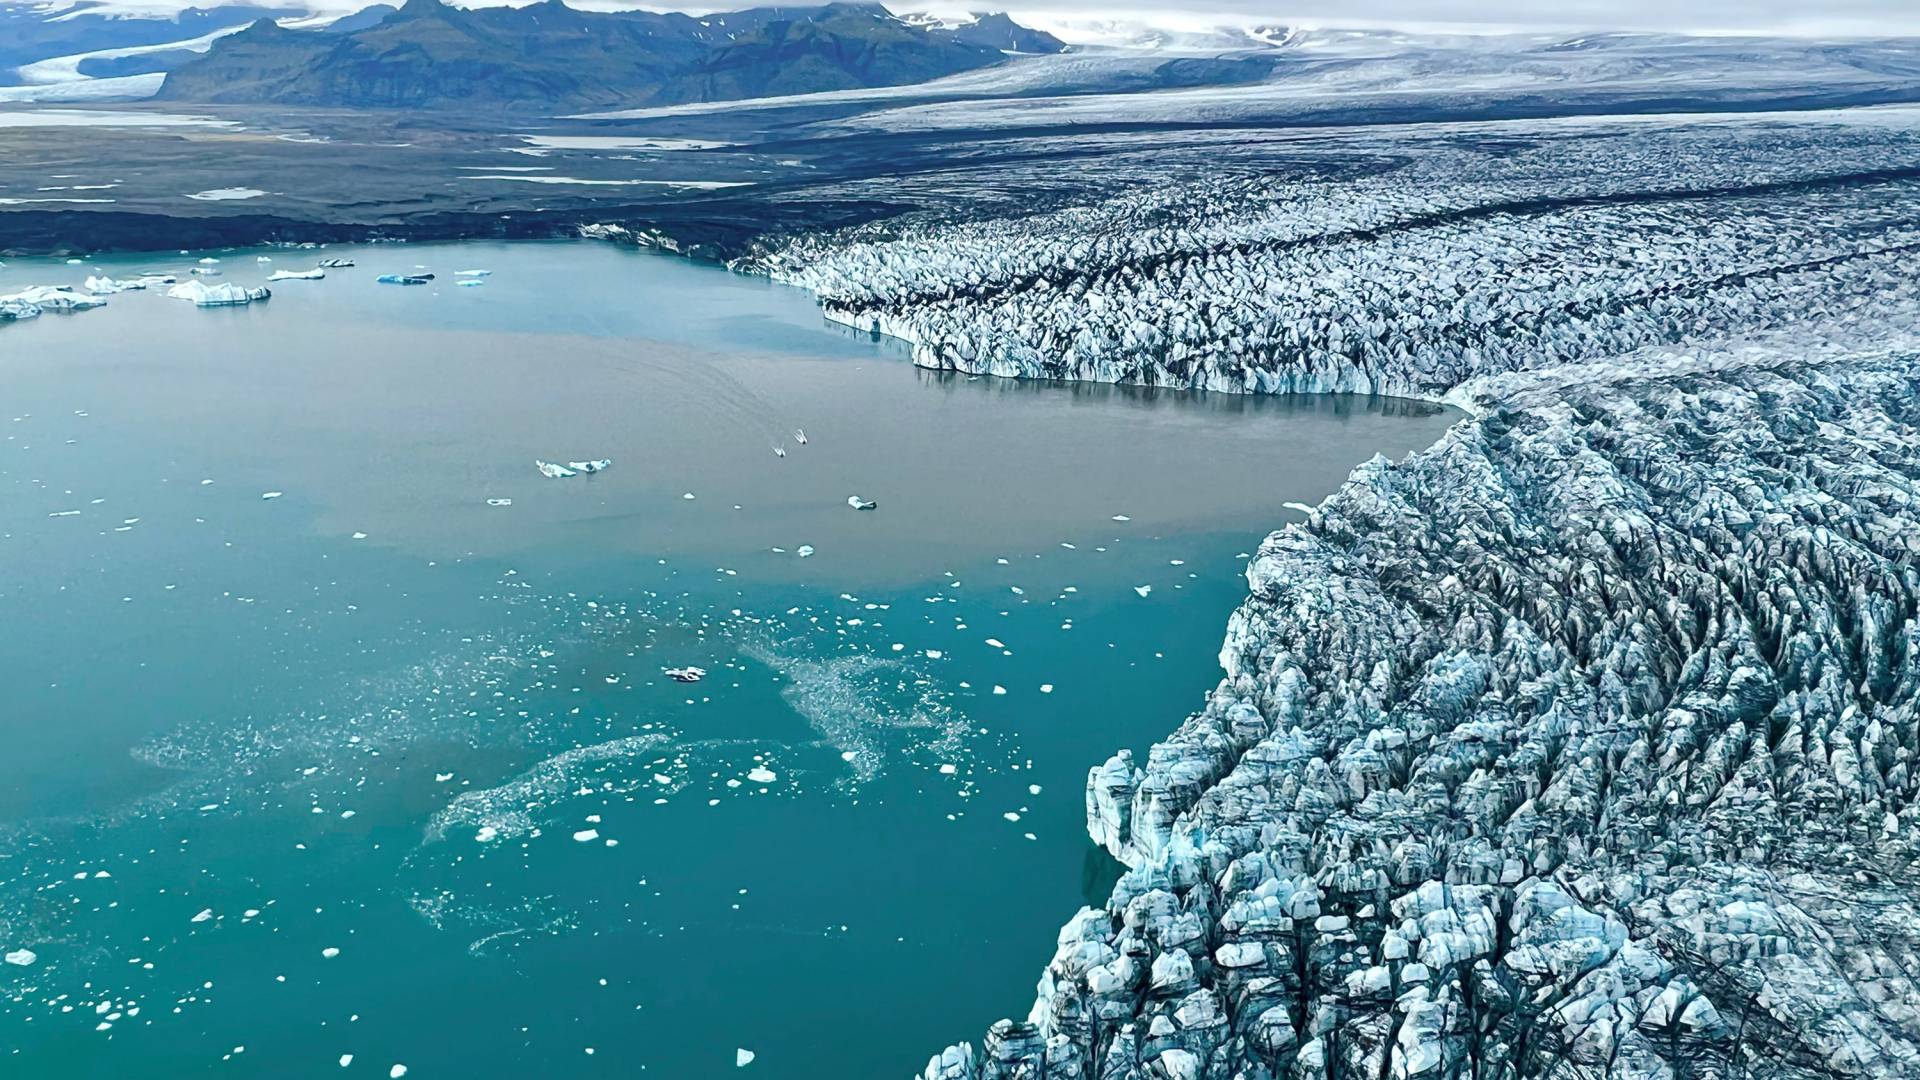 The rapid melting of Breiðamerkurjökull,